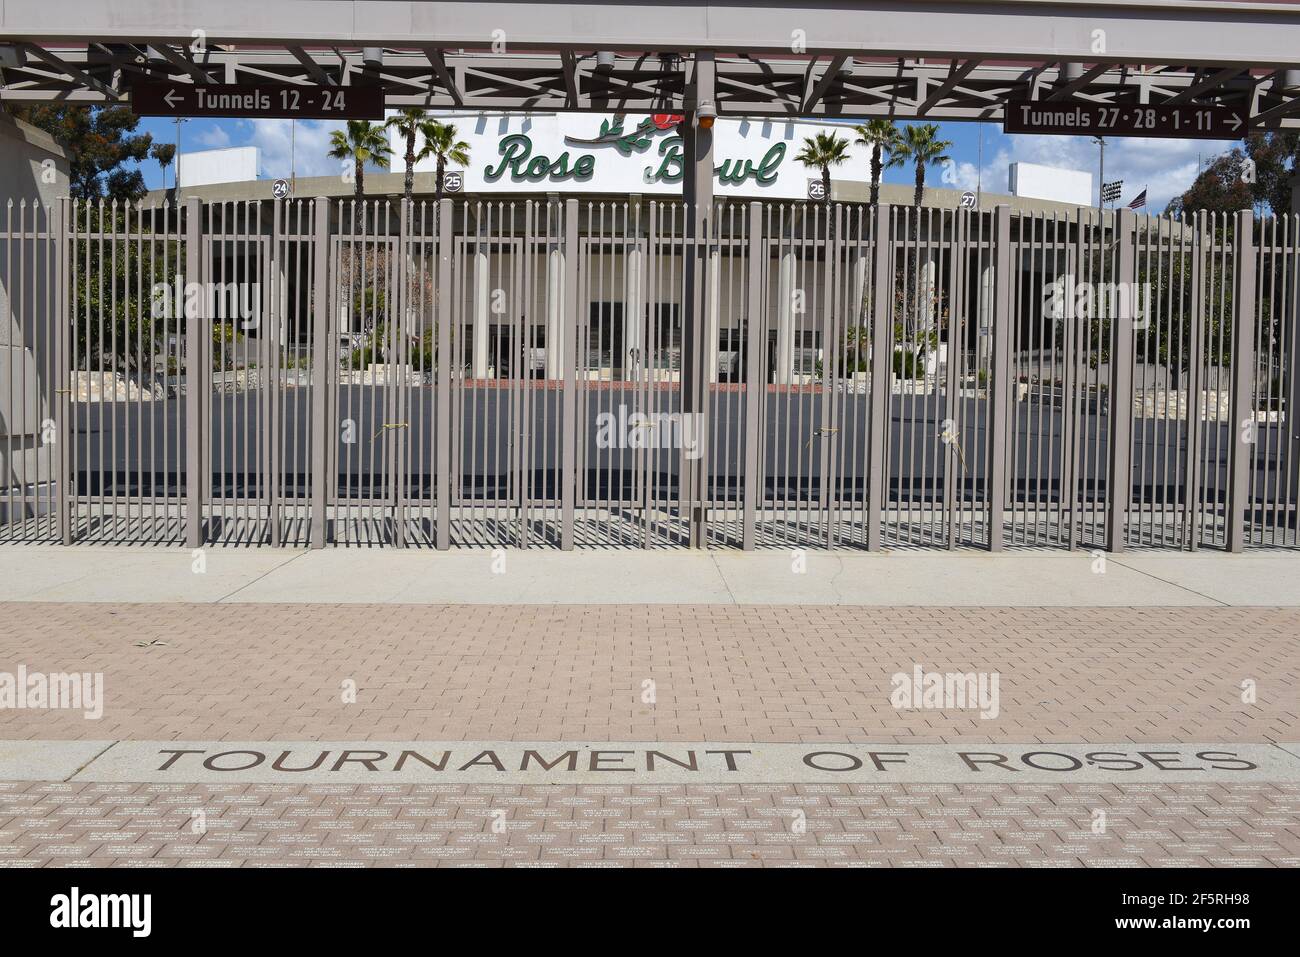 PASADENA, CALIFORNIA - 26 MAR 2021: Torneo di rose nella passeggiata al cancello principale dello stadio di calcio Rose Bowl. Foto Stock